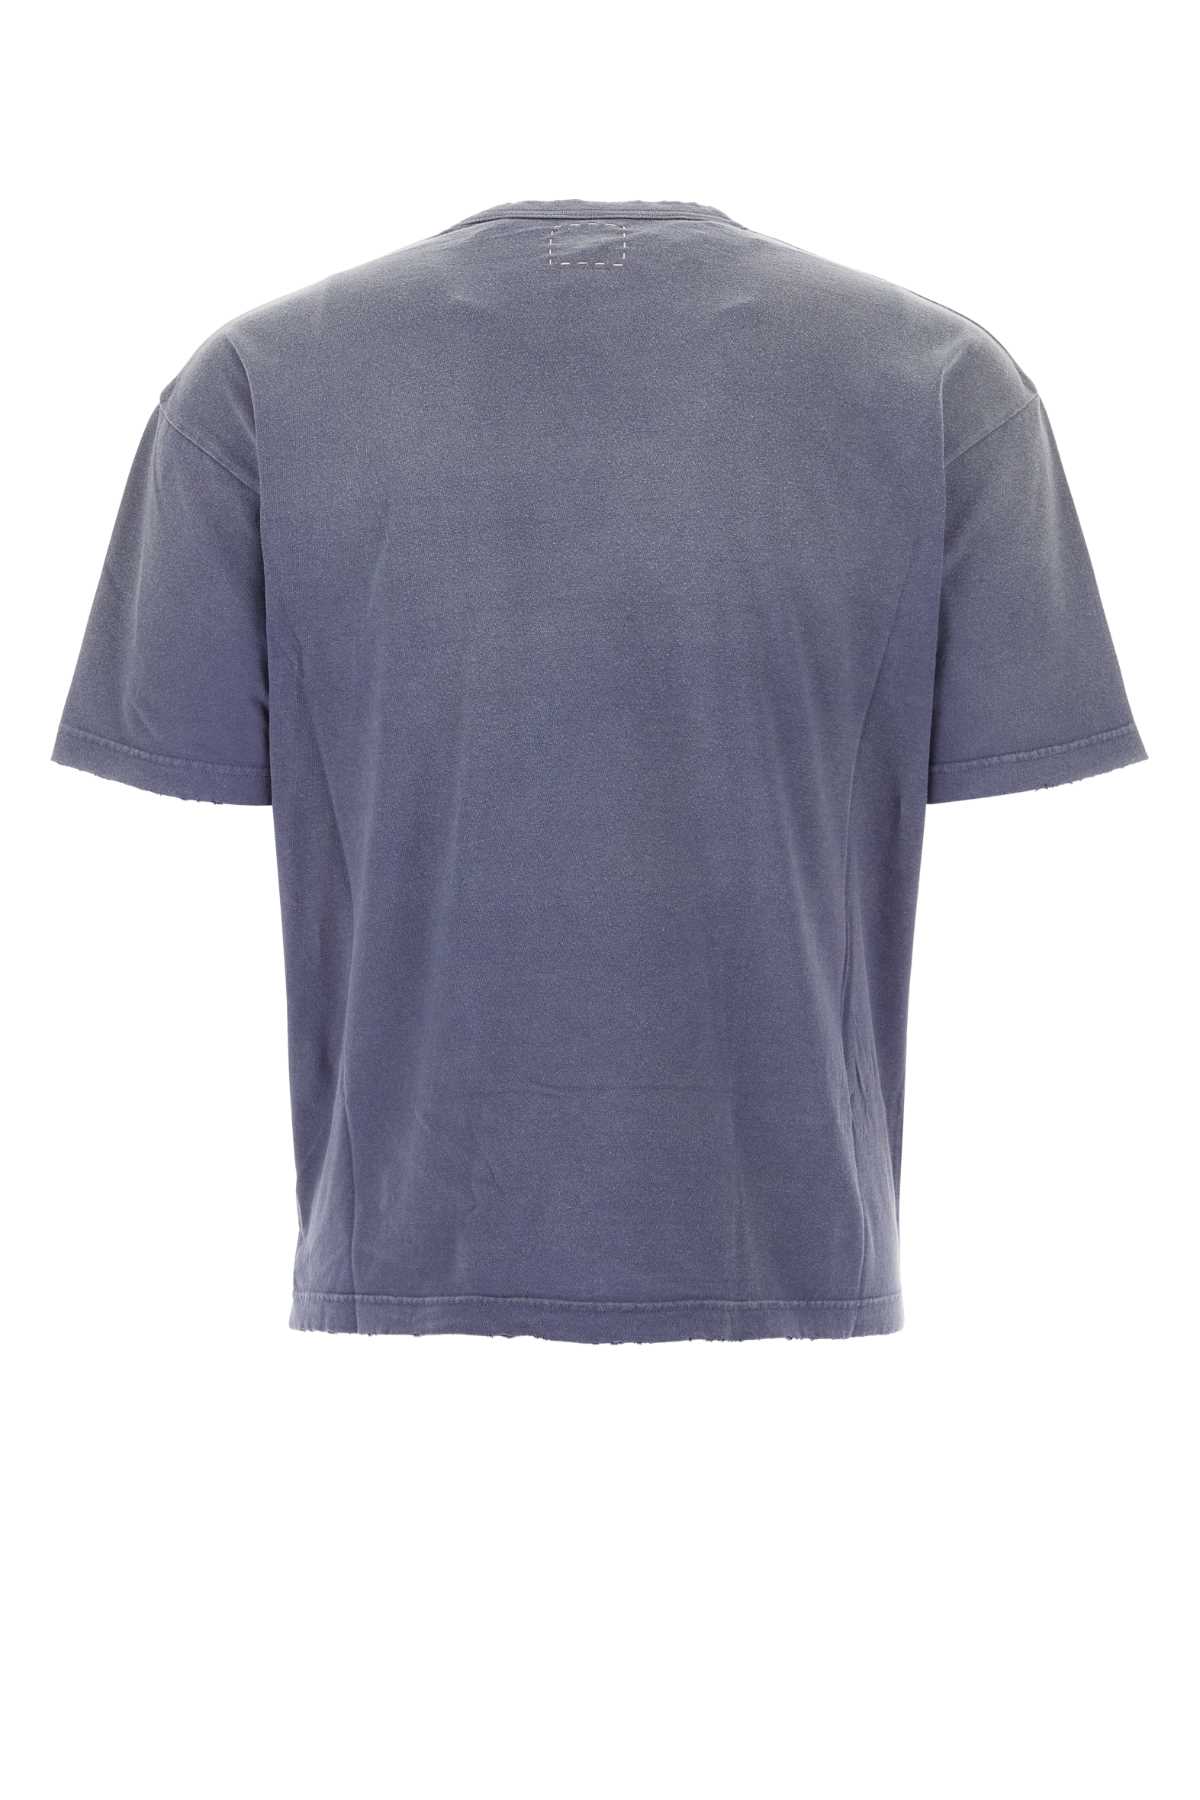 Visvim Purple Cotton Jumbo T-shirt In Navy